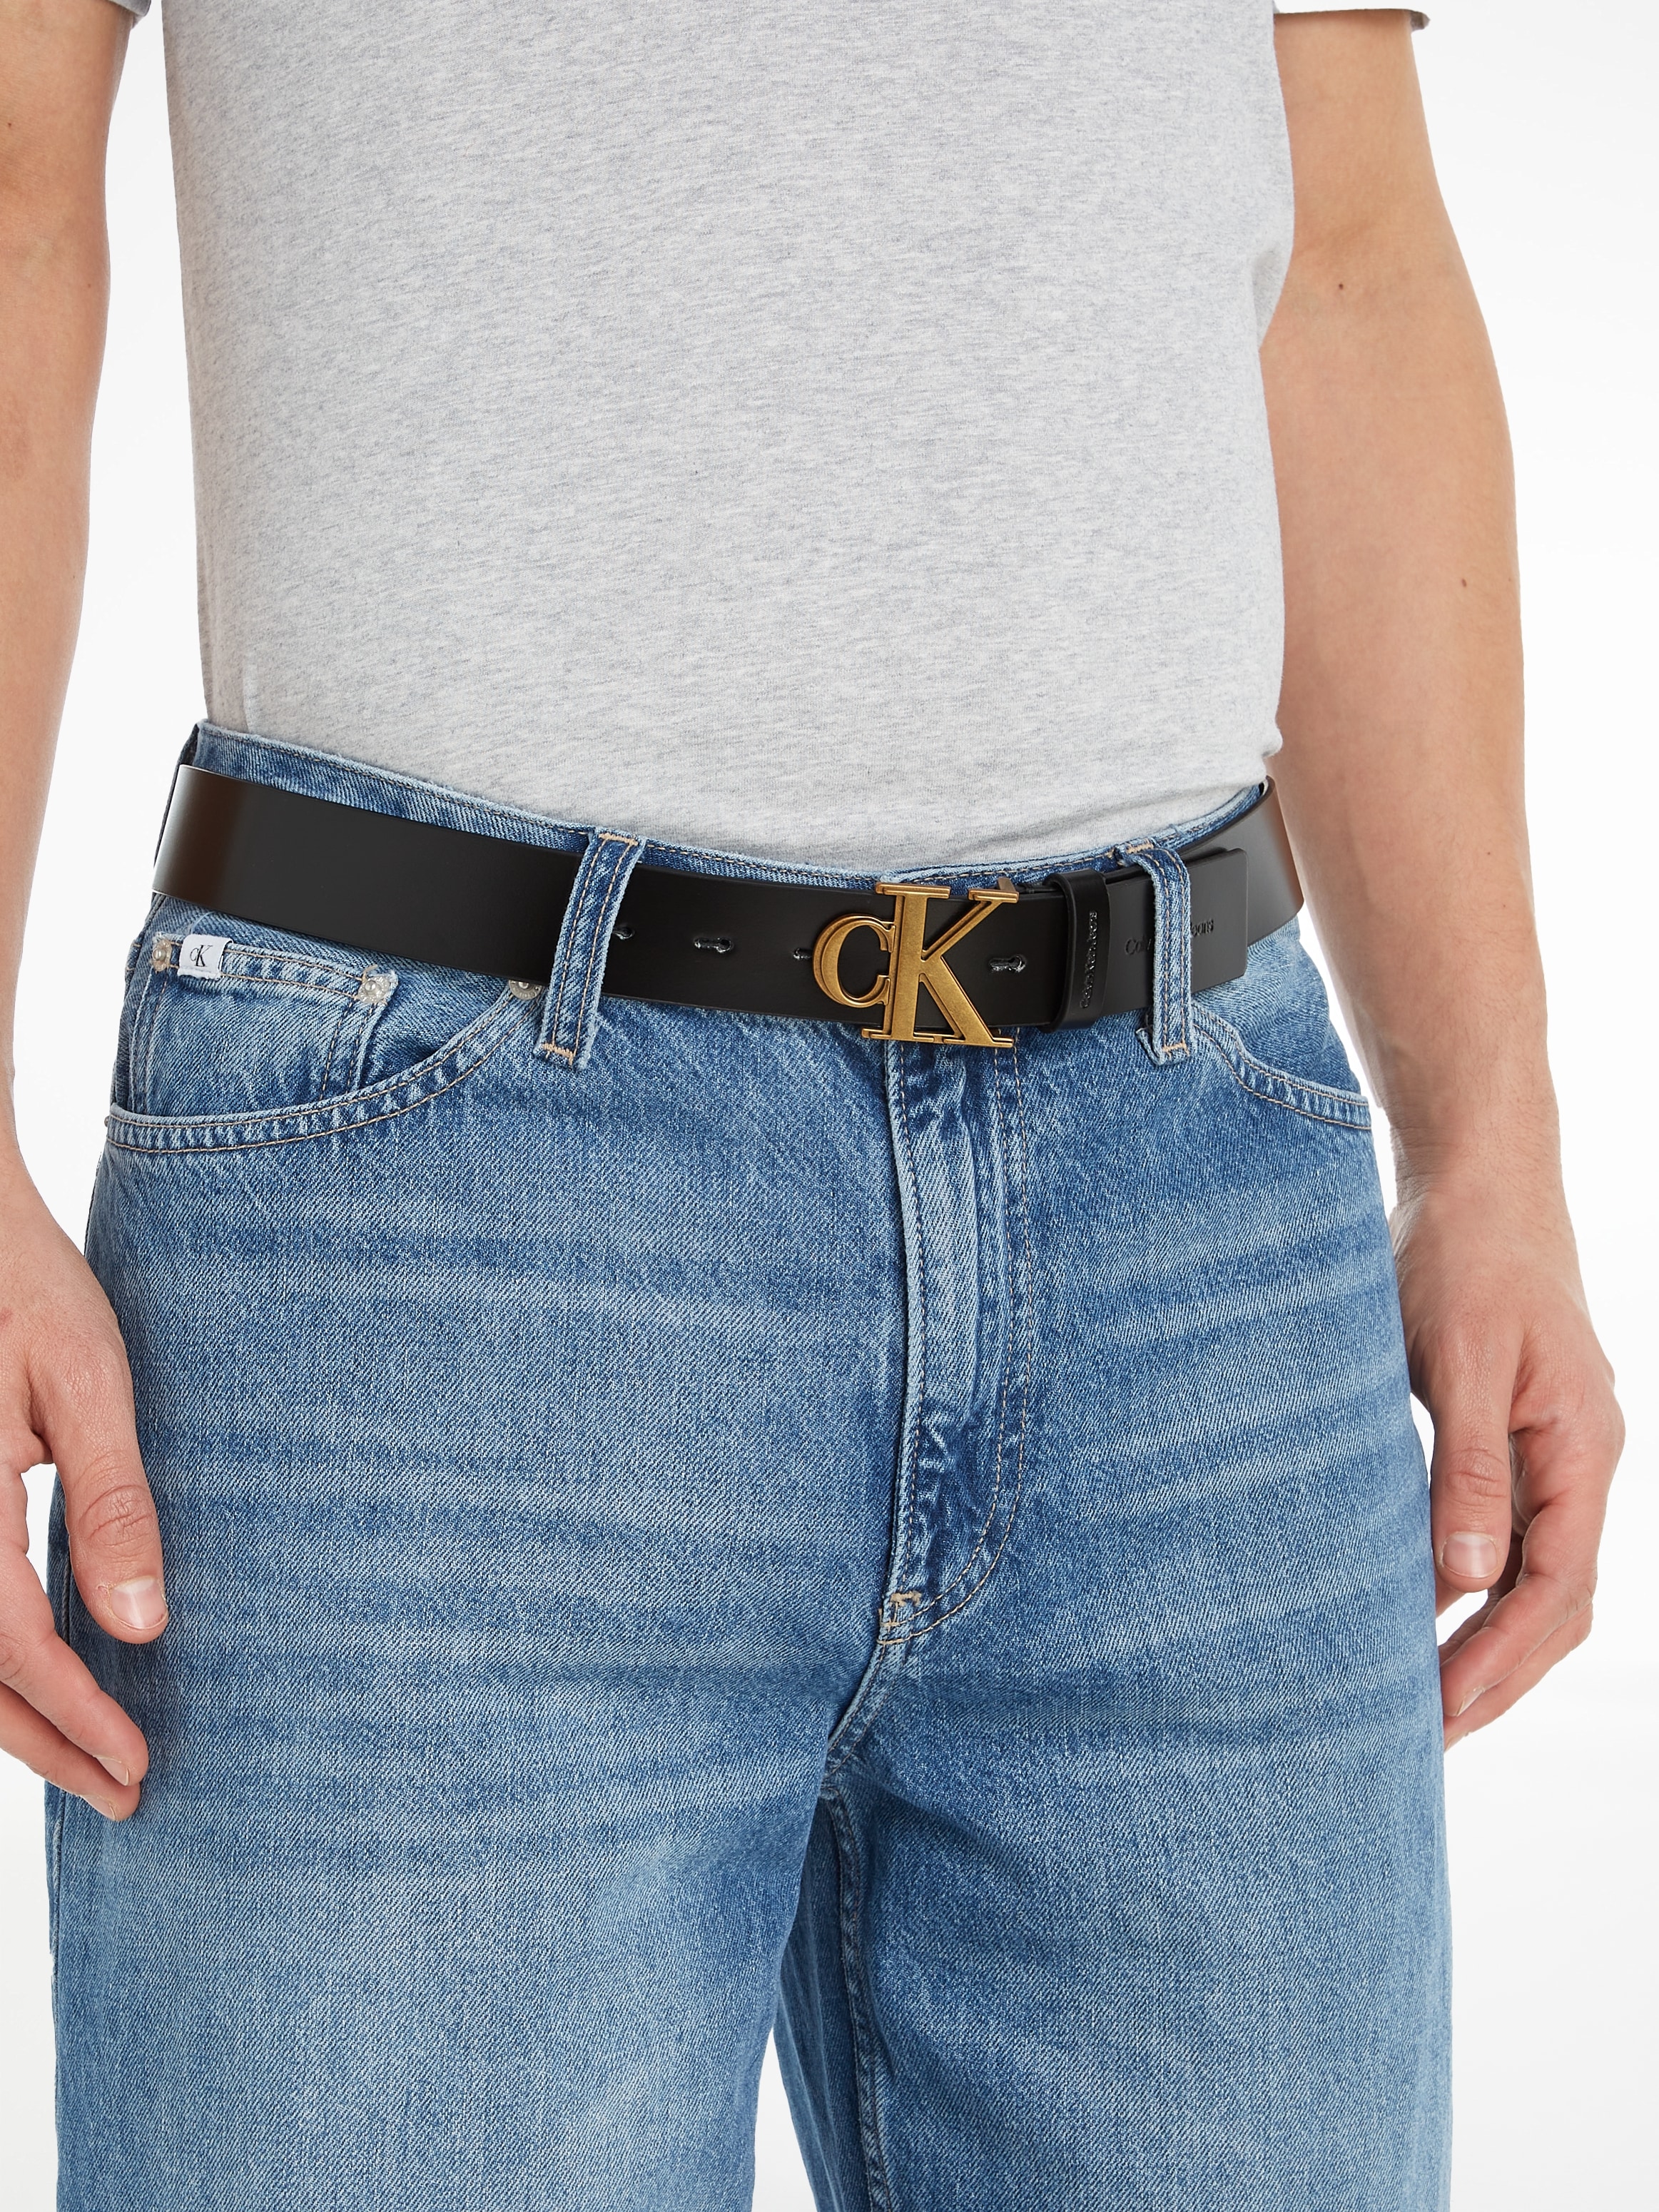 LTHR« OUTLINE Calvin Jeans Ledergürtel OTTO kaufen »Gürtel bei MONO Klein